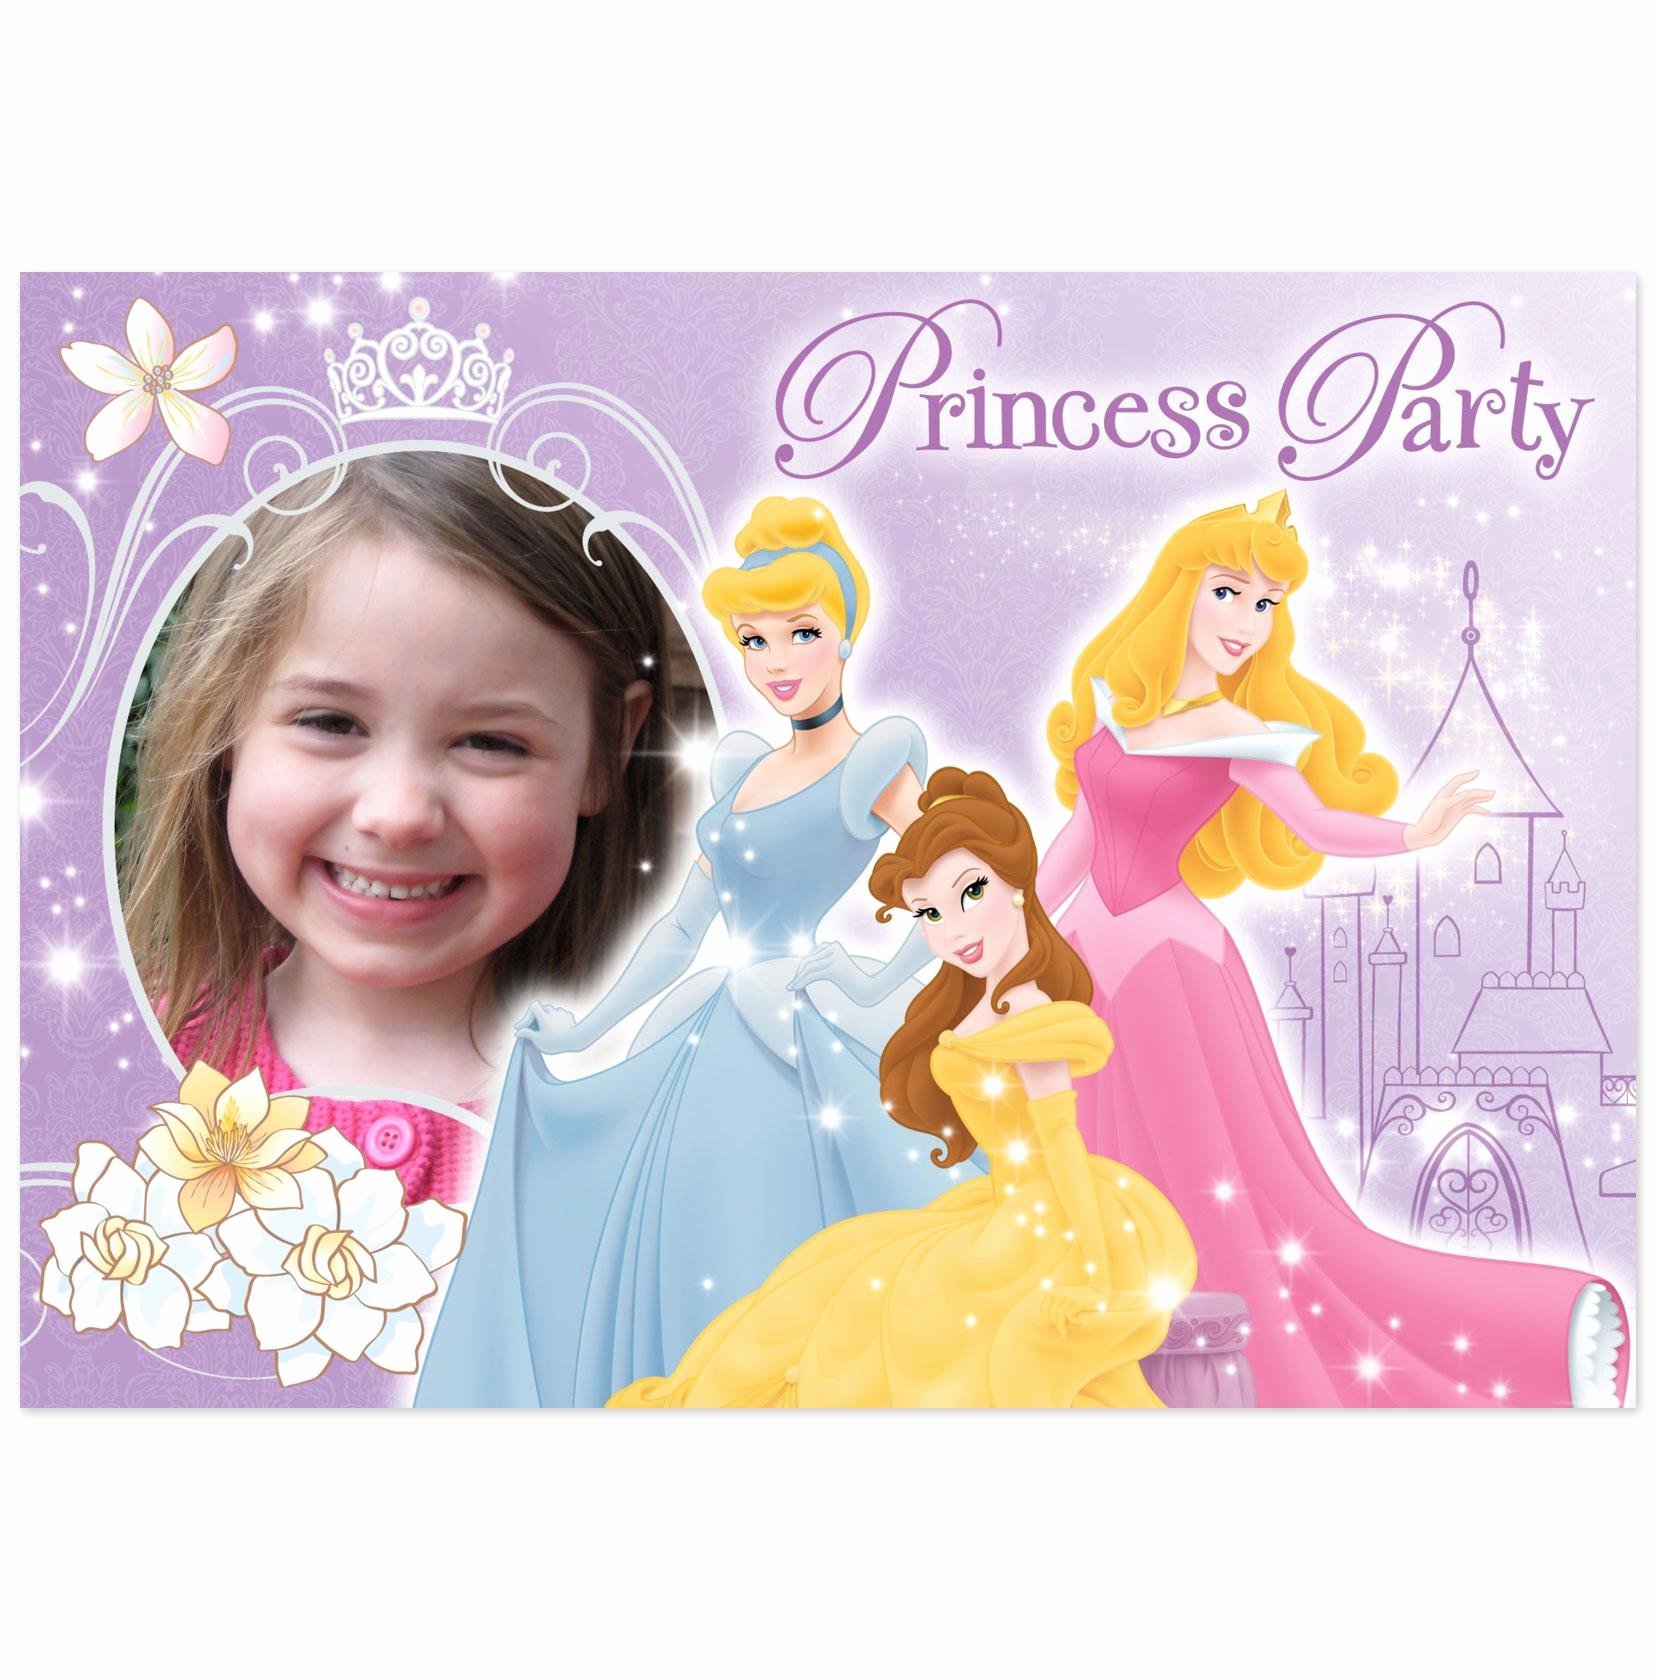 Принцесса 6 лет. День рождения принцессы. Плакат с днем рождения принцесса. Пригласительные на день рождения принцессы. Открытка принцесса.